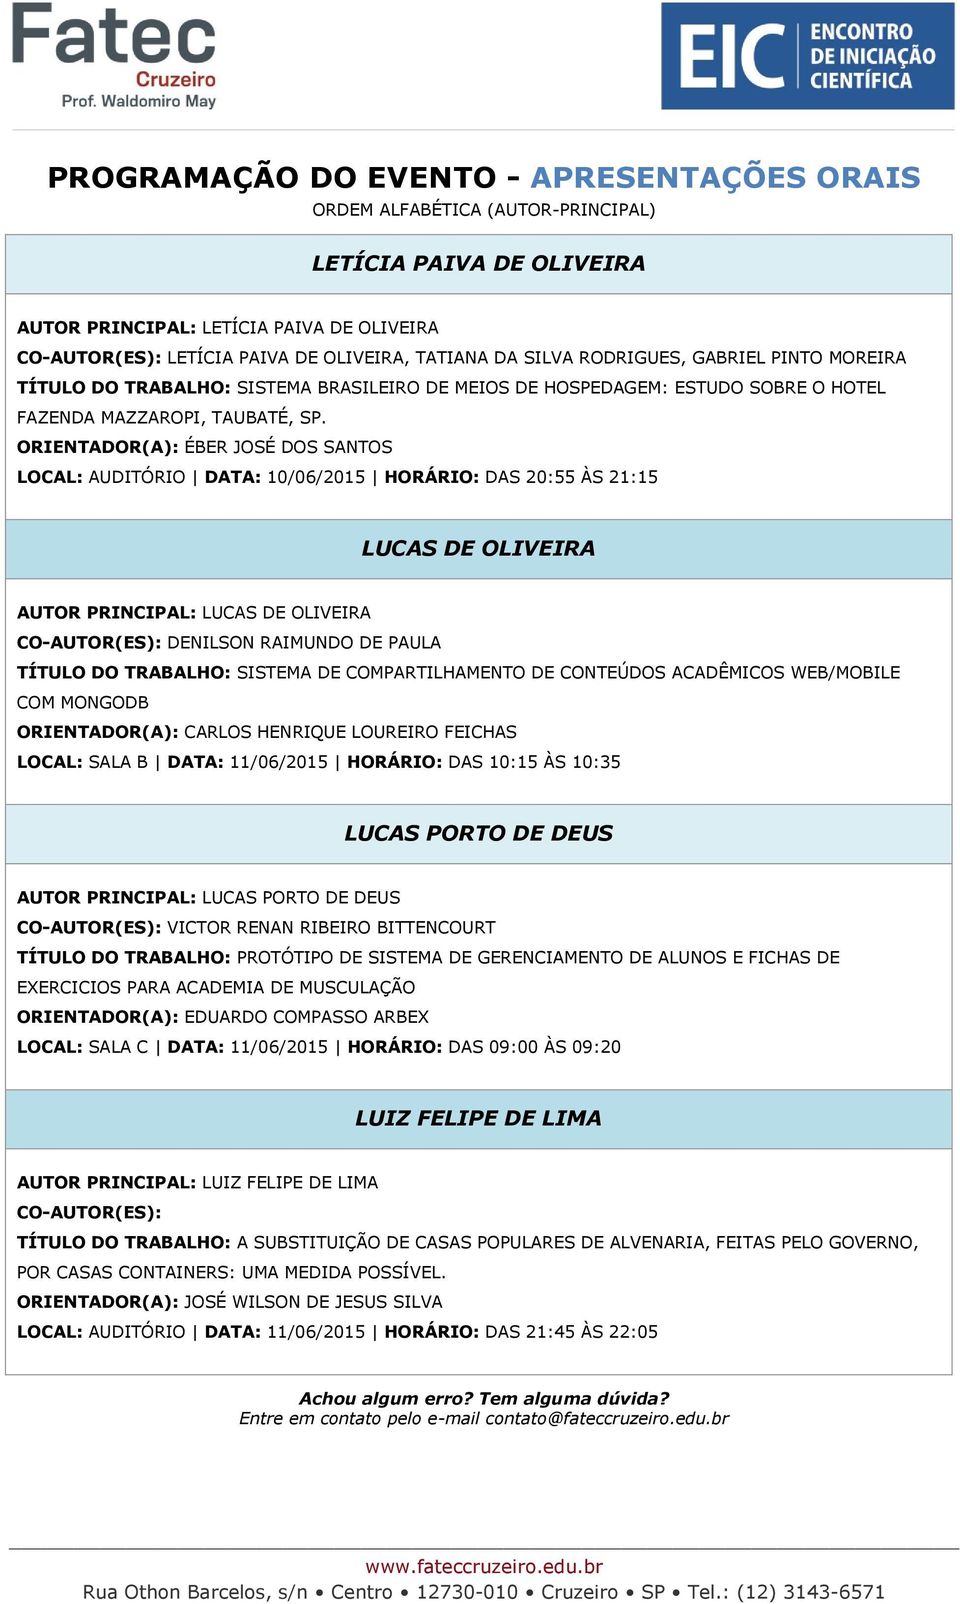 ORIENTADOR(A): ÉBER JOSÉ DOS SANTOS LOCAL: AUDITÓRIO DATA: 10/06/2015 HORÁRIO: DAS 20:55 ÀS 21:15 LUCAS DE OLIVEIRA AUTOR PRINCIPAL: LUCAS DE OLIVEIRA DENILSON RAIMUNDO DE PAULA TÍTULO DO TRABALHO: